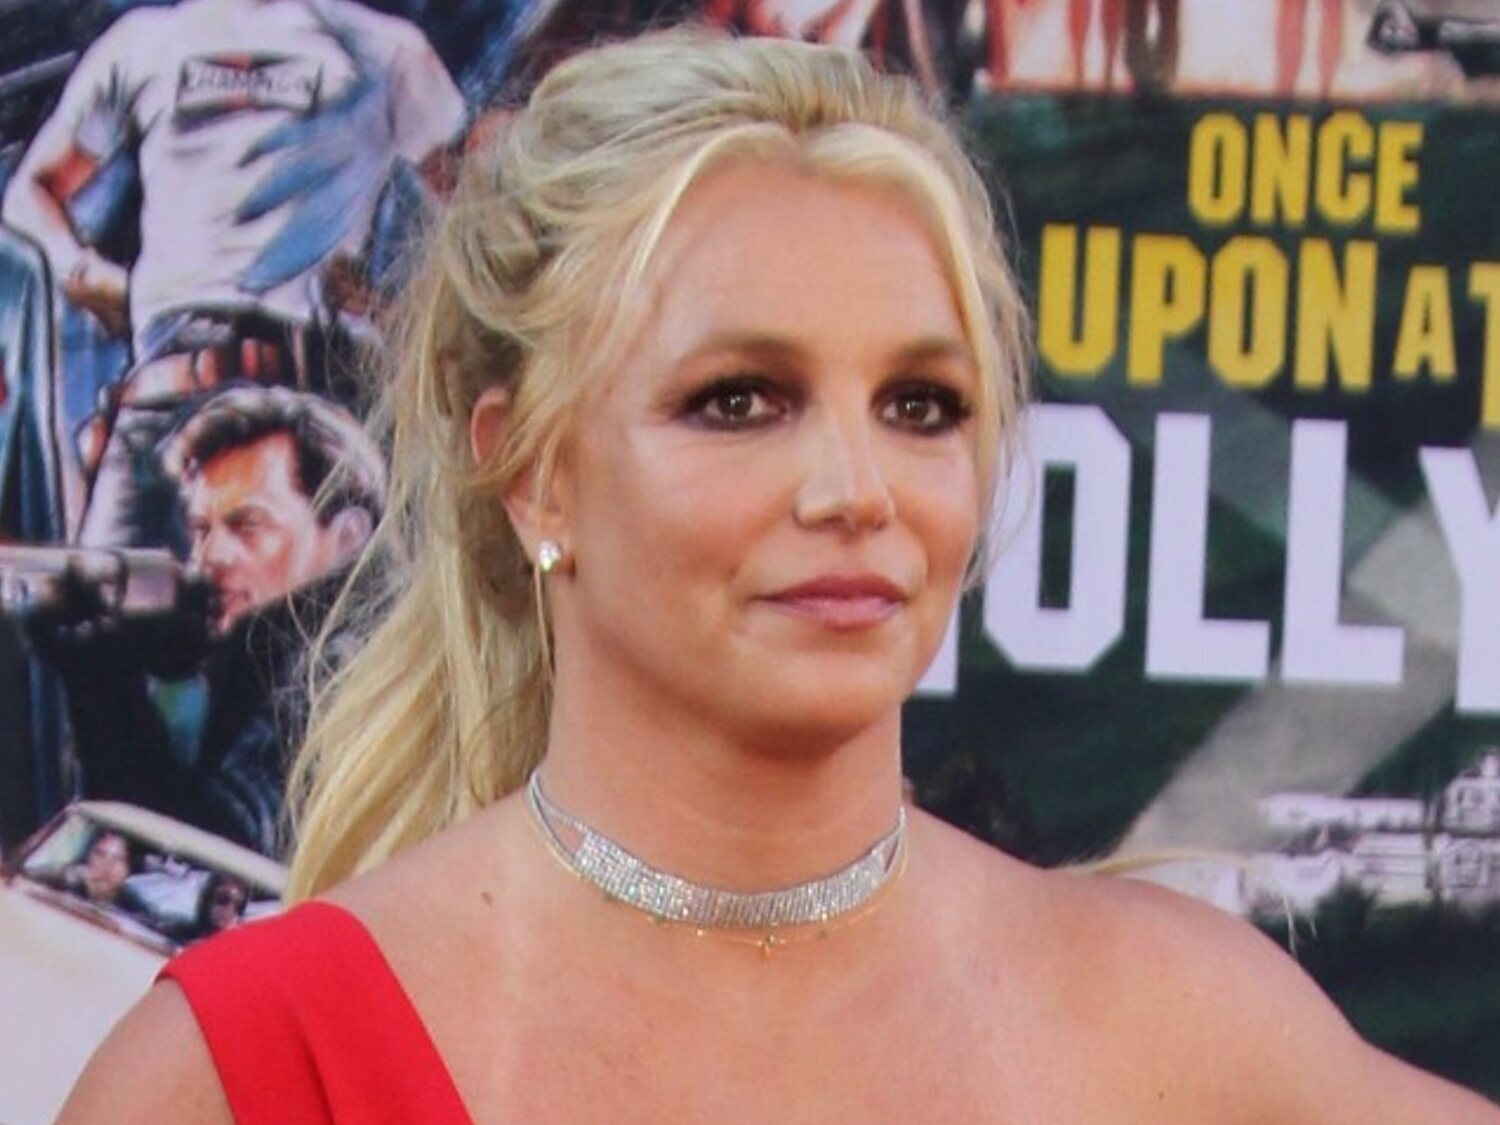 Britney Spears deja los escenarios: "No voy a actuar con mi padre manejando lo que pongo, digo, hago o pienso"